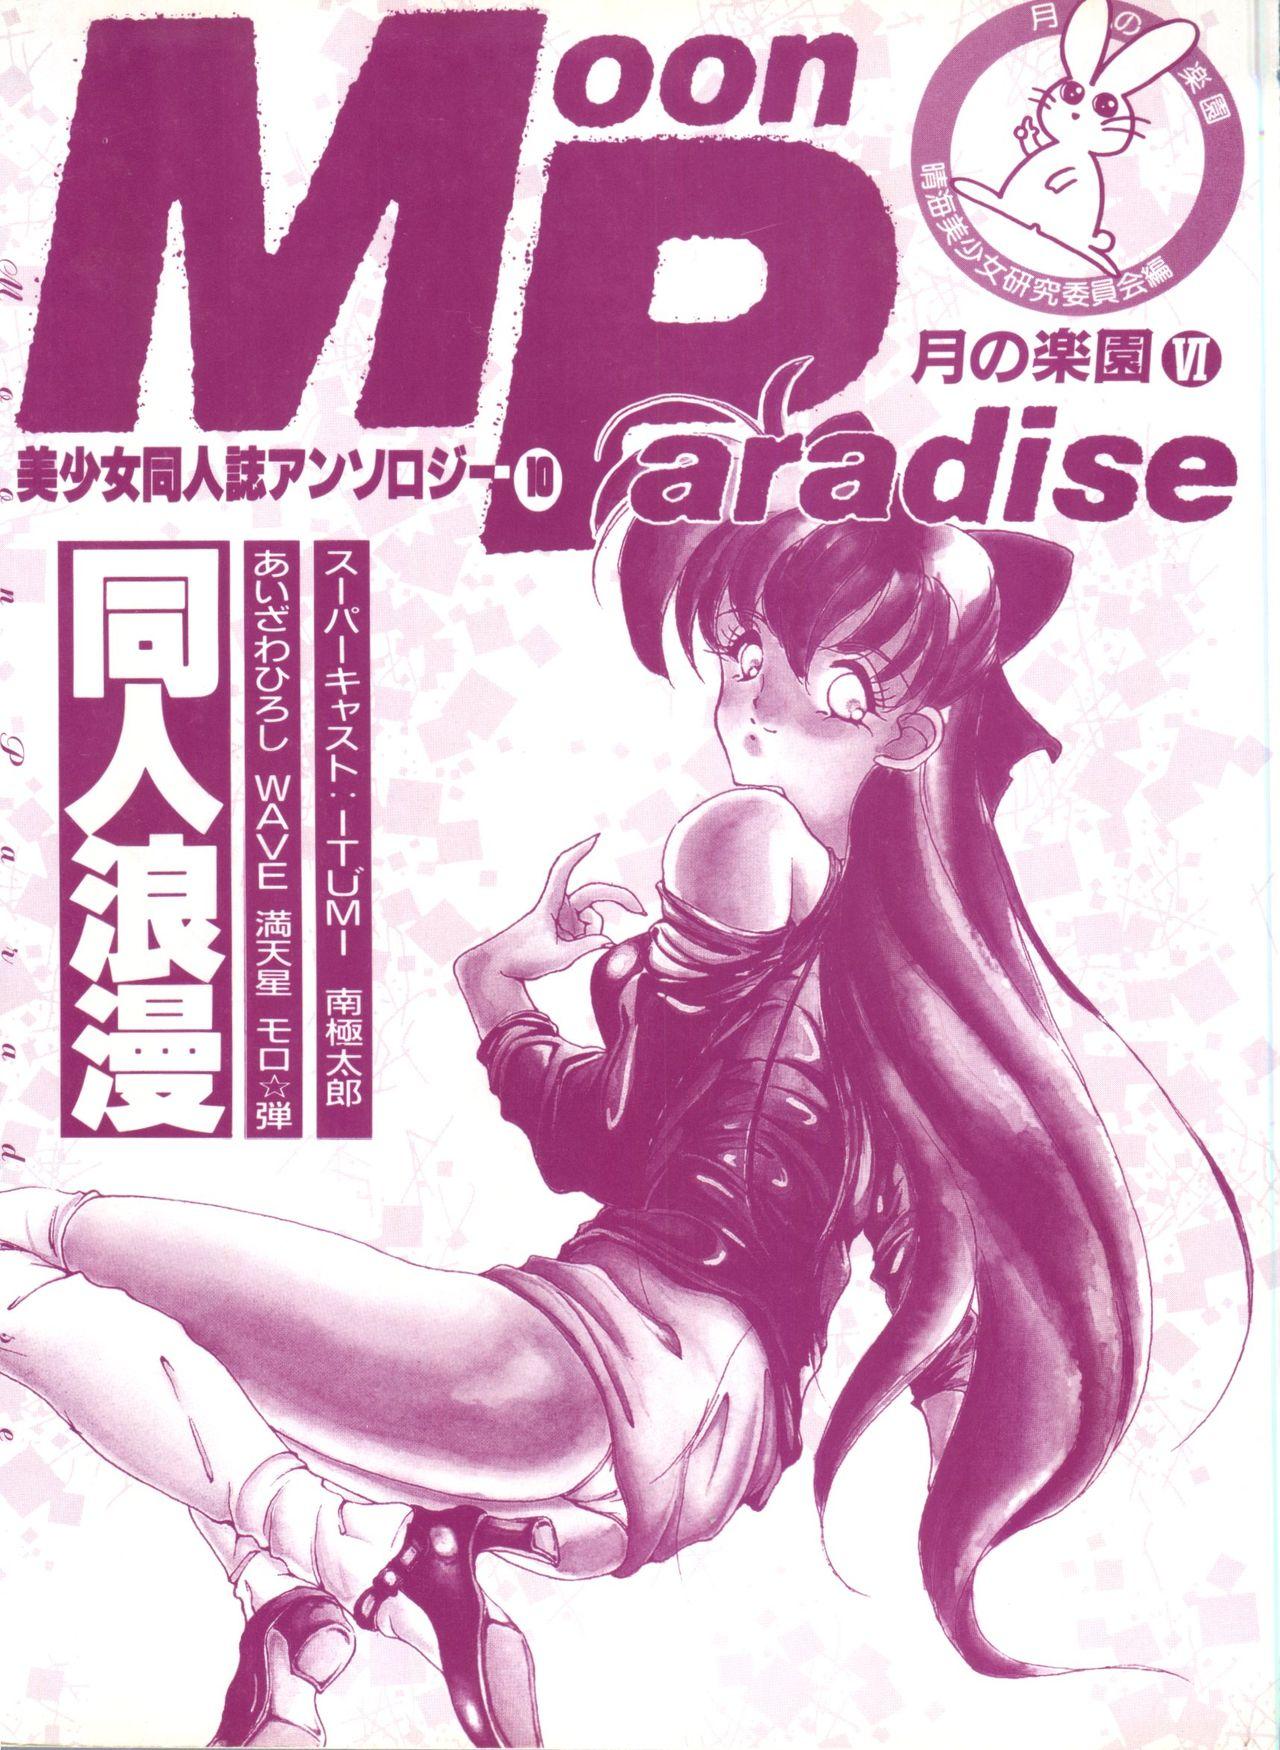 Bishoujo Doujinshi Anthology 10 - Moon Paradise 6 Tsuki no Rakuen 3